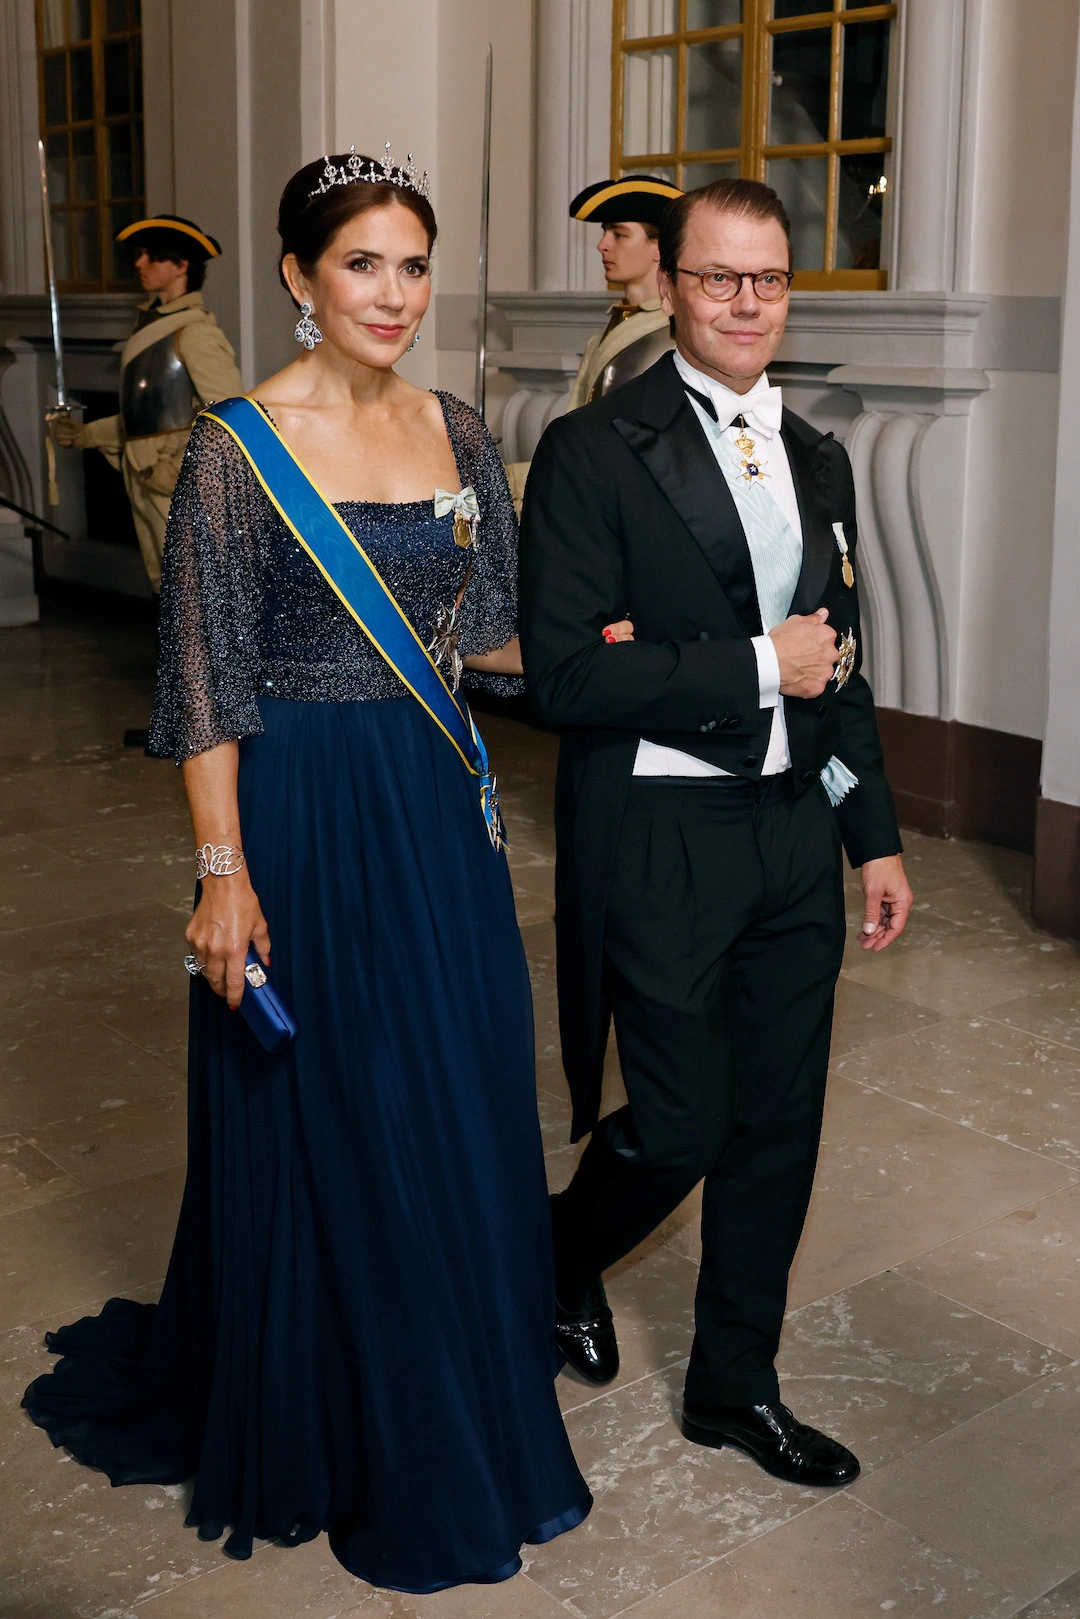 Kronprinzessin Mary beim Thronjubiläum von König Carl Gustaf